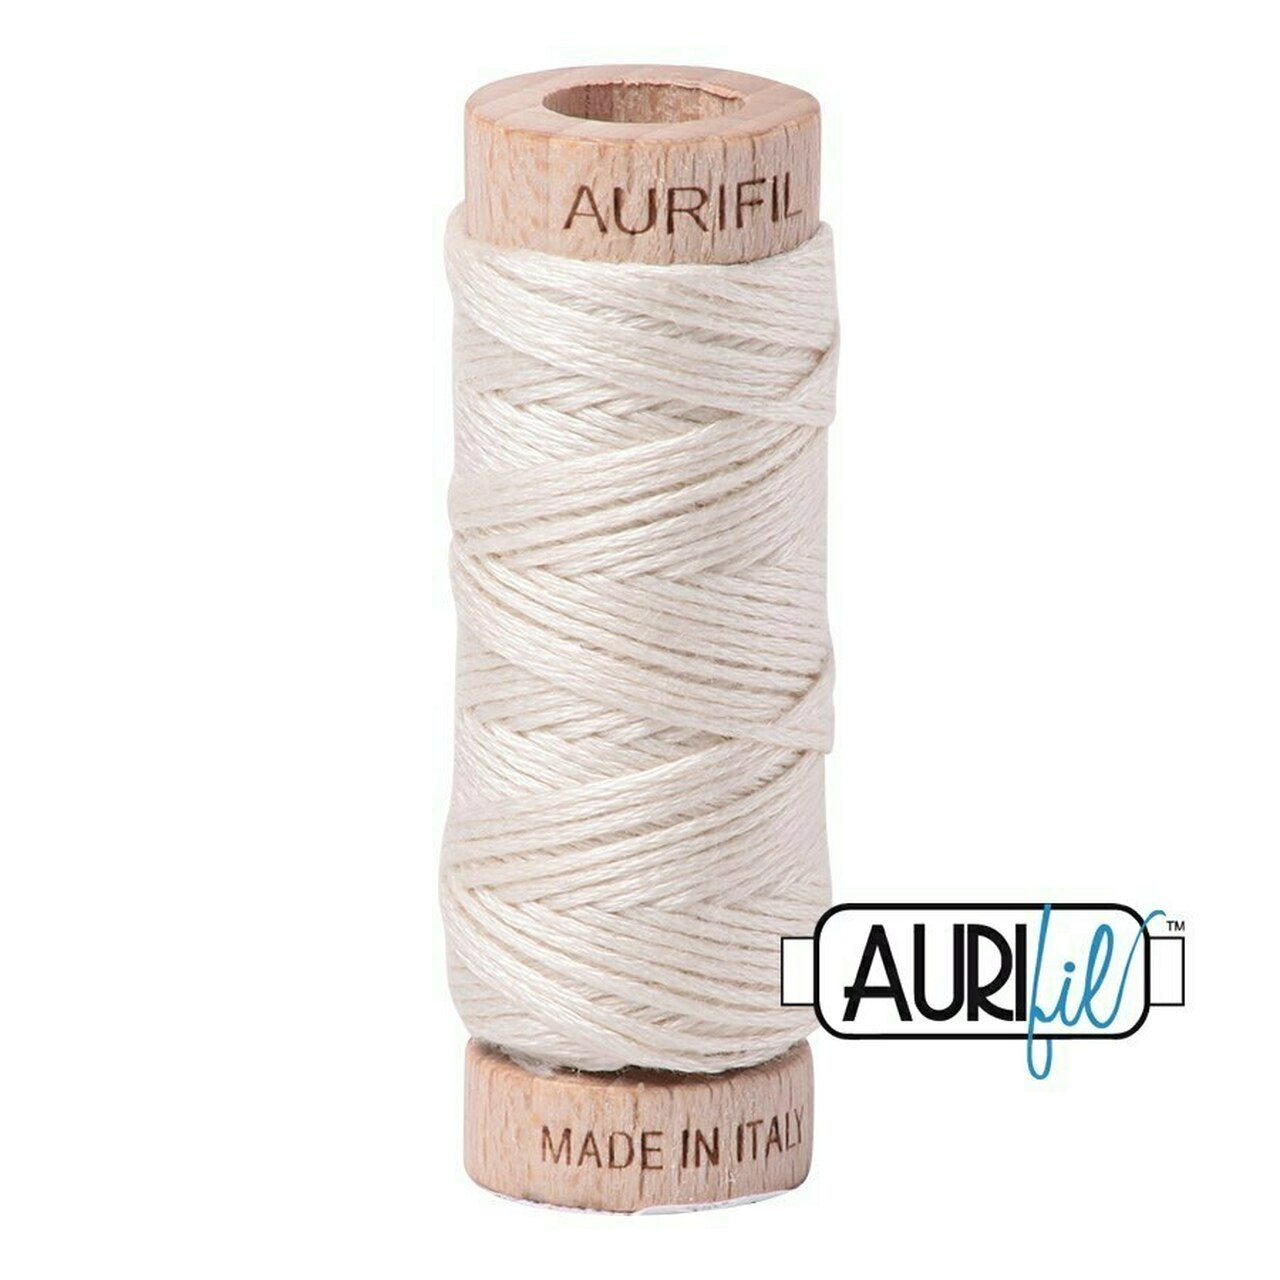 Aurifil 2309 - Silver White